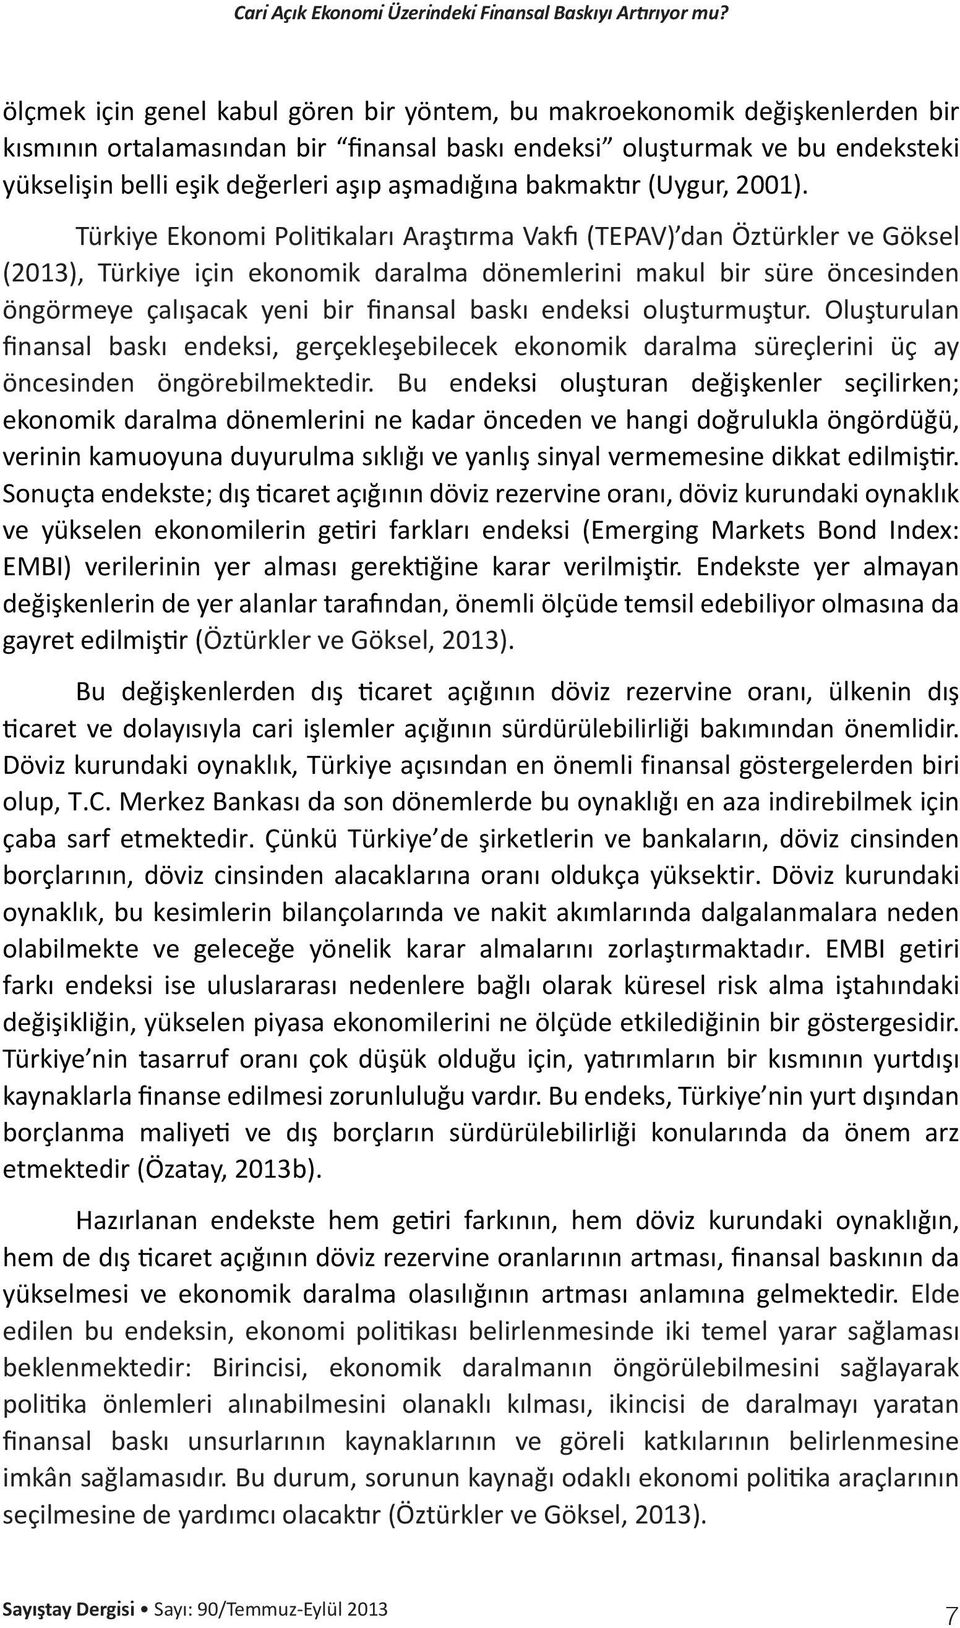 Türkiye Ekonomi Politikaları Araştırma Vakfı (TEPAV) dan Öztürkler ve Göksel (2013), Türkiye için ekonomik daralma dönemlerini makul bir süre öncesinden öngörmeye çalışacak yeni bir finansal baskı